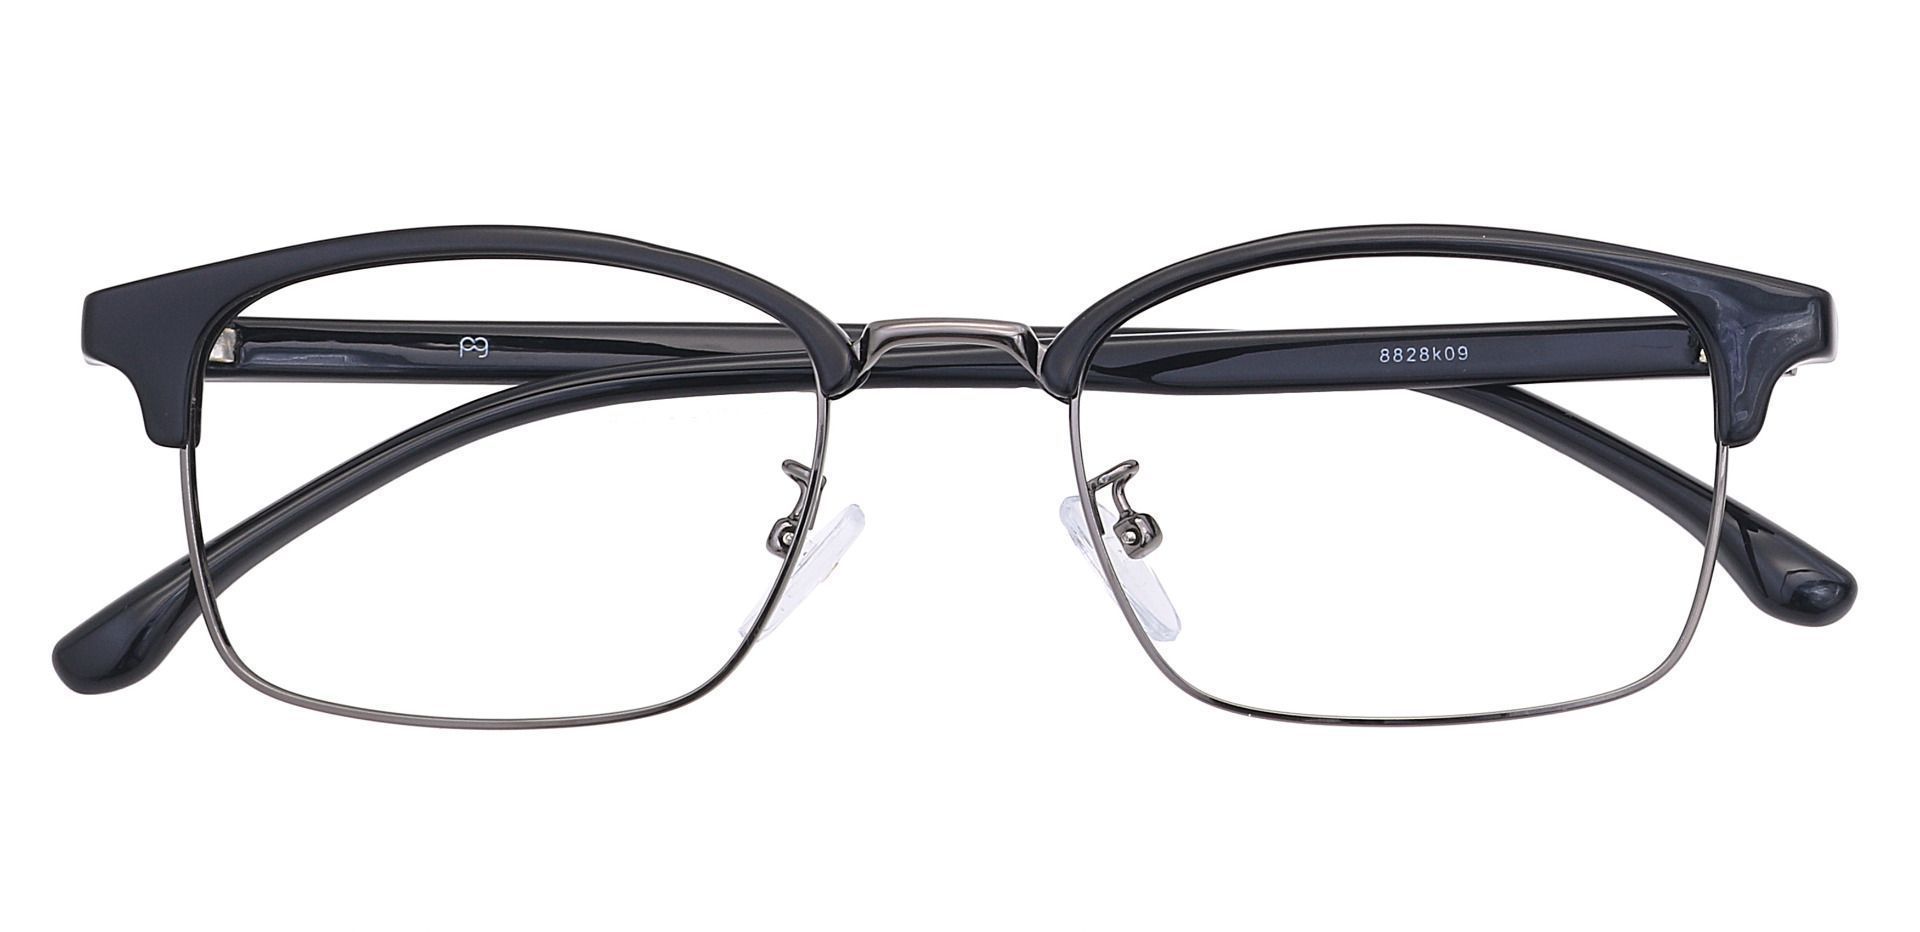 Clover Browline Non-Rx Glasses - Black